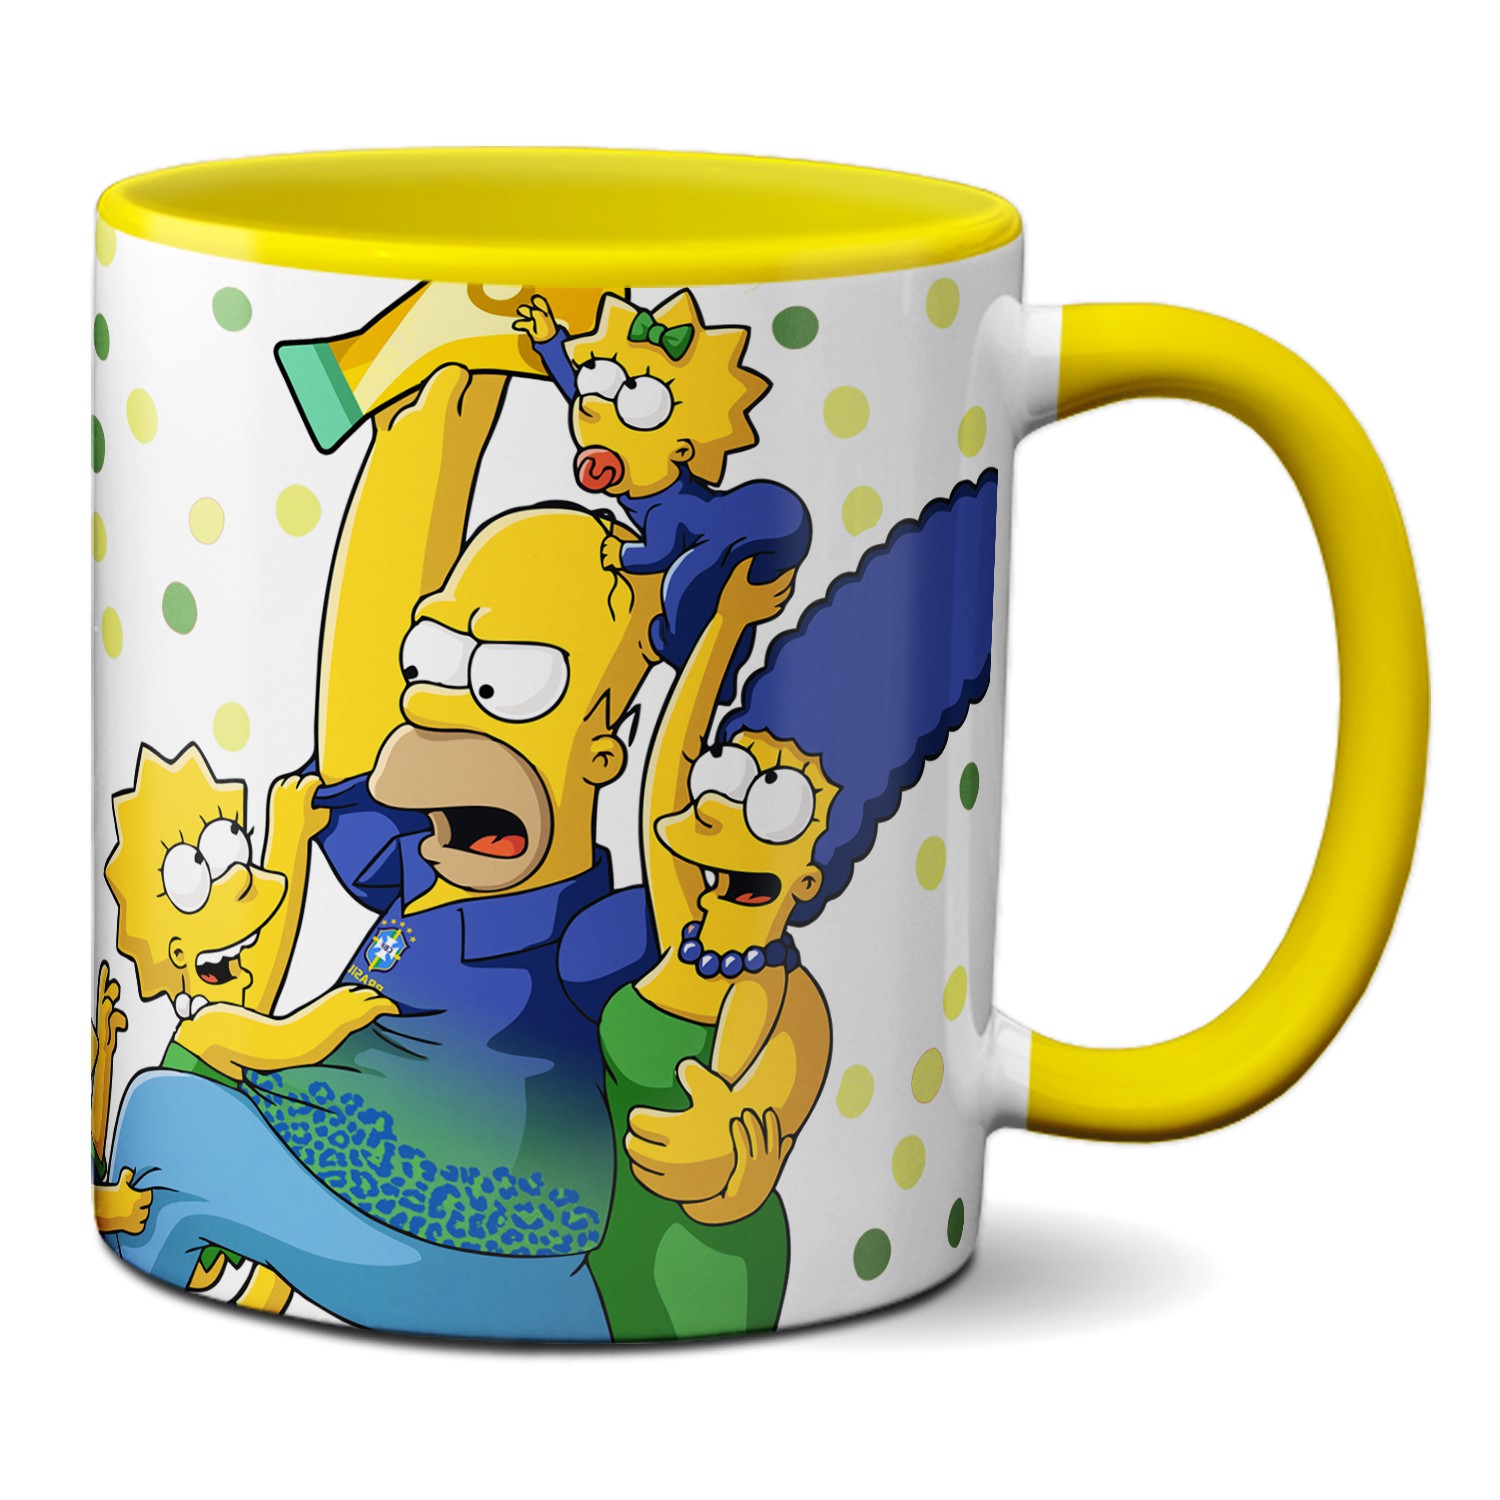 Caneca O Hexa É Nosso! Pra Cima Brasil! Família Simpsons - Minha Caneca